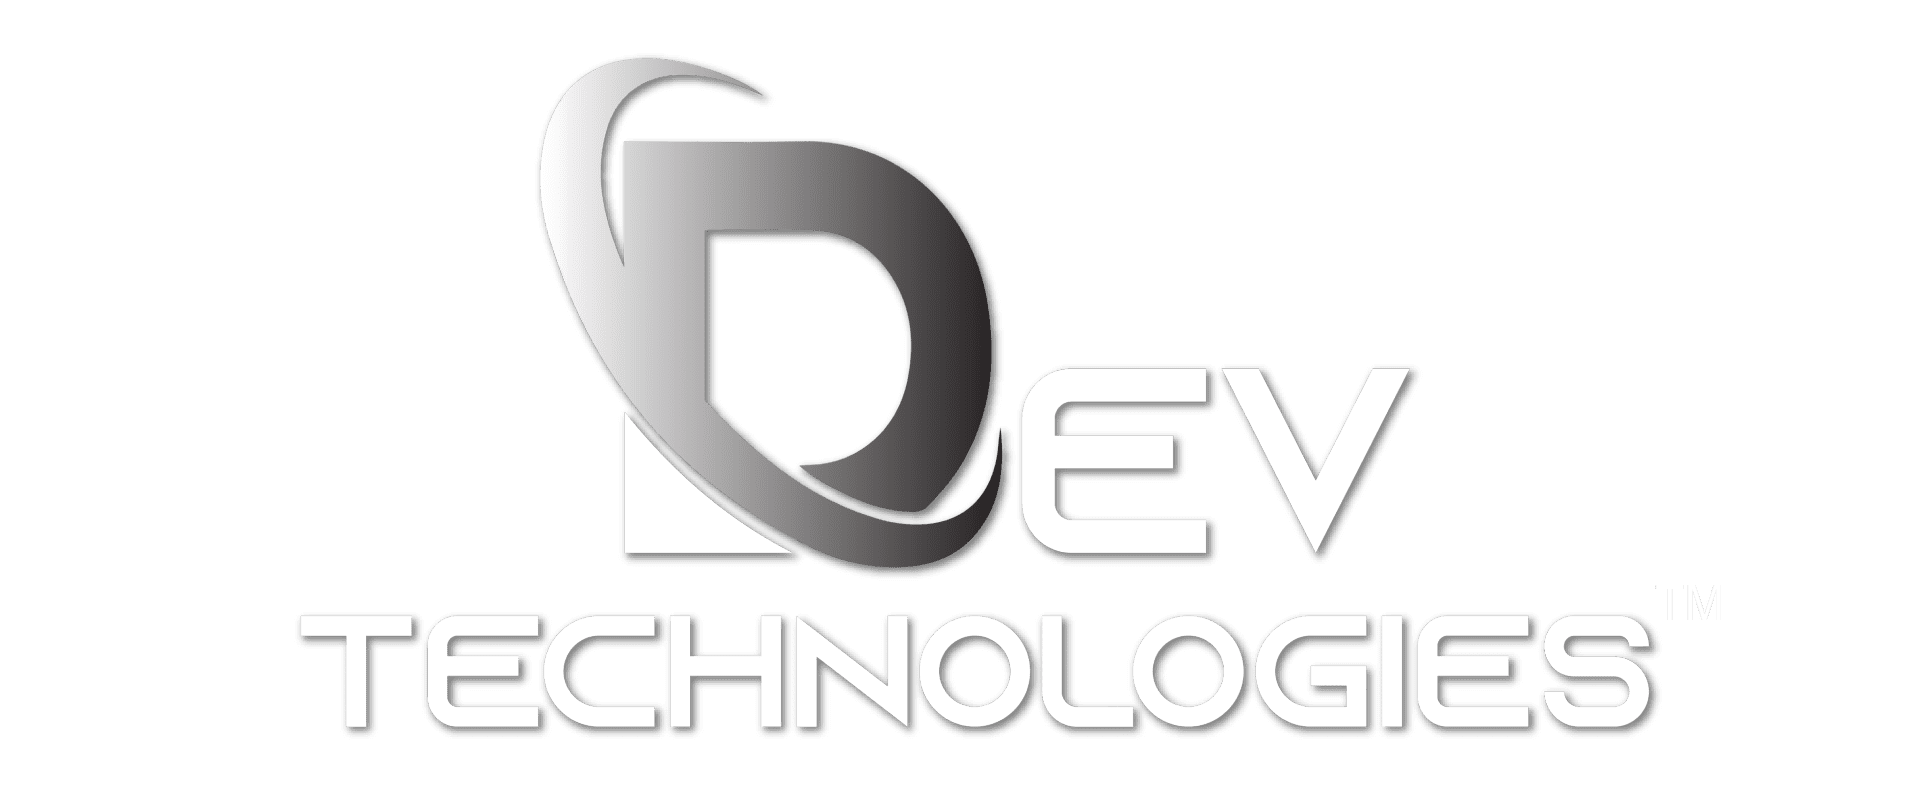 A logo of devtech technologies